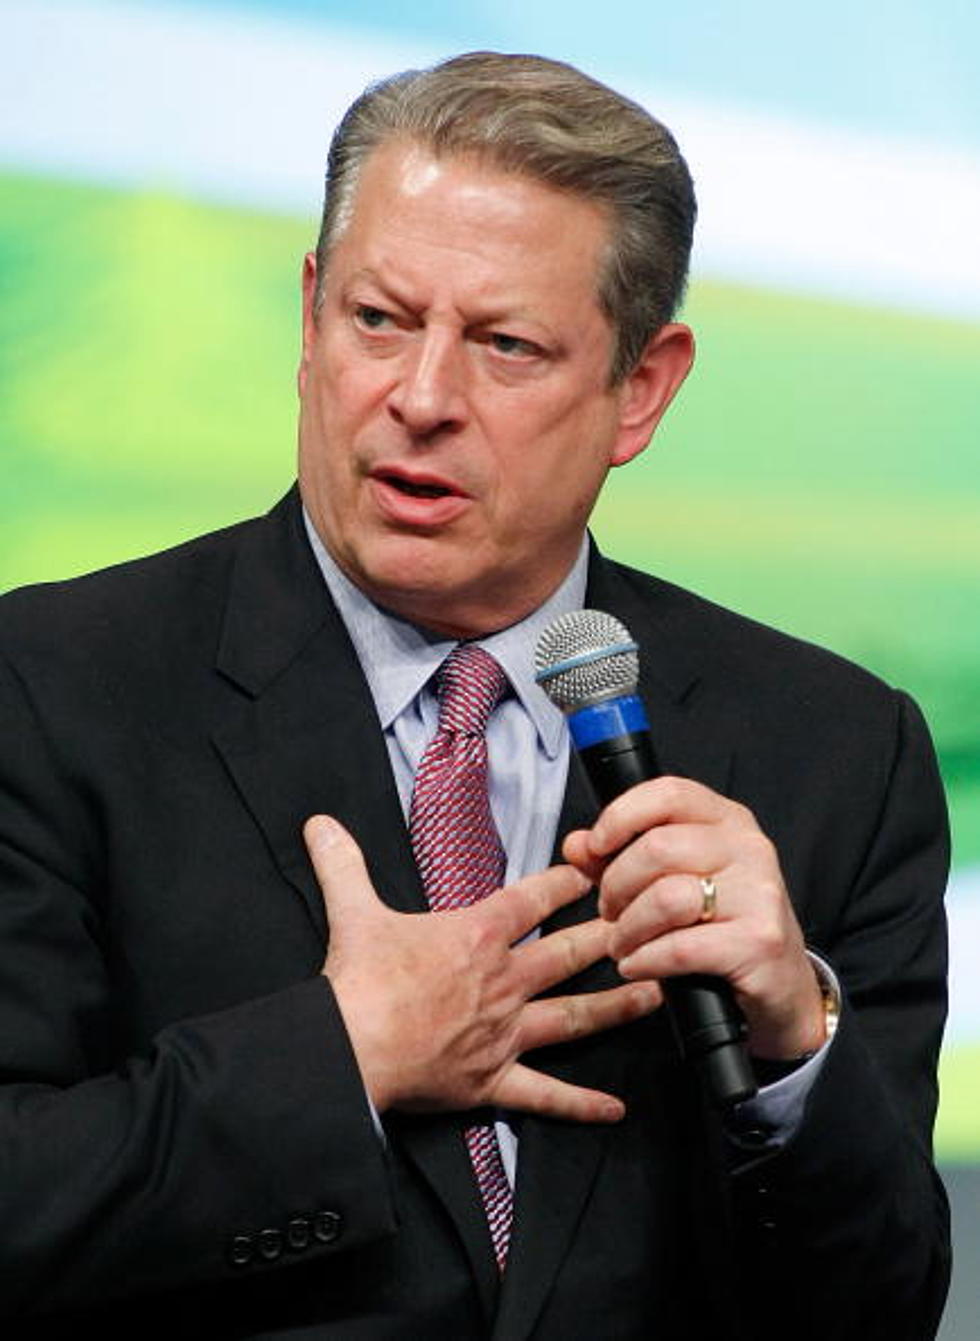 Al Gore Has A Fit